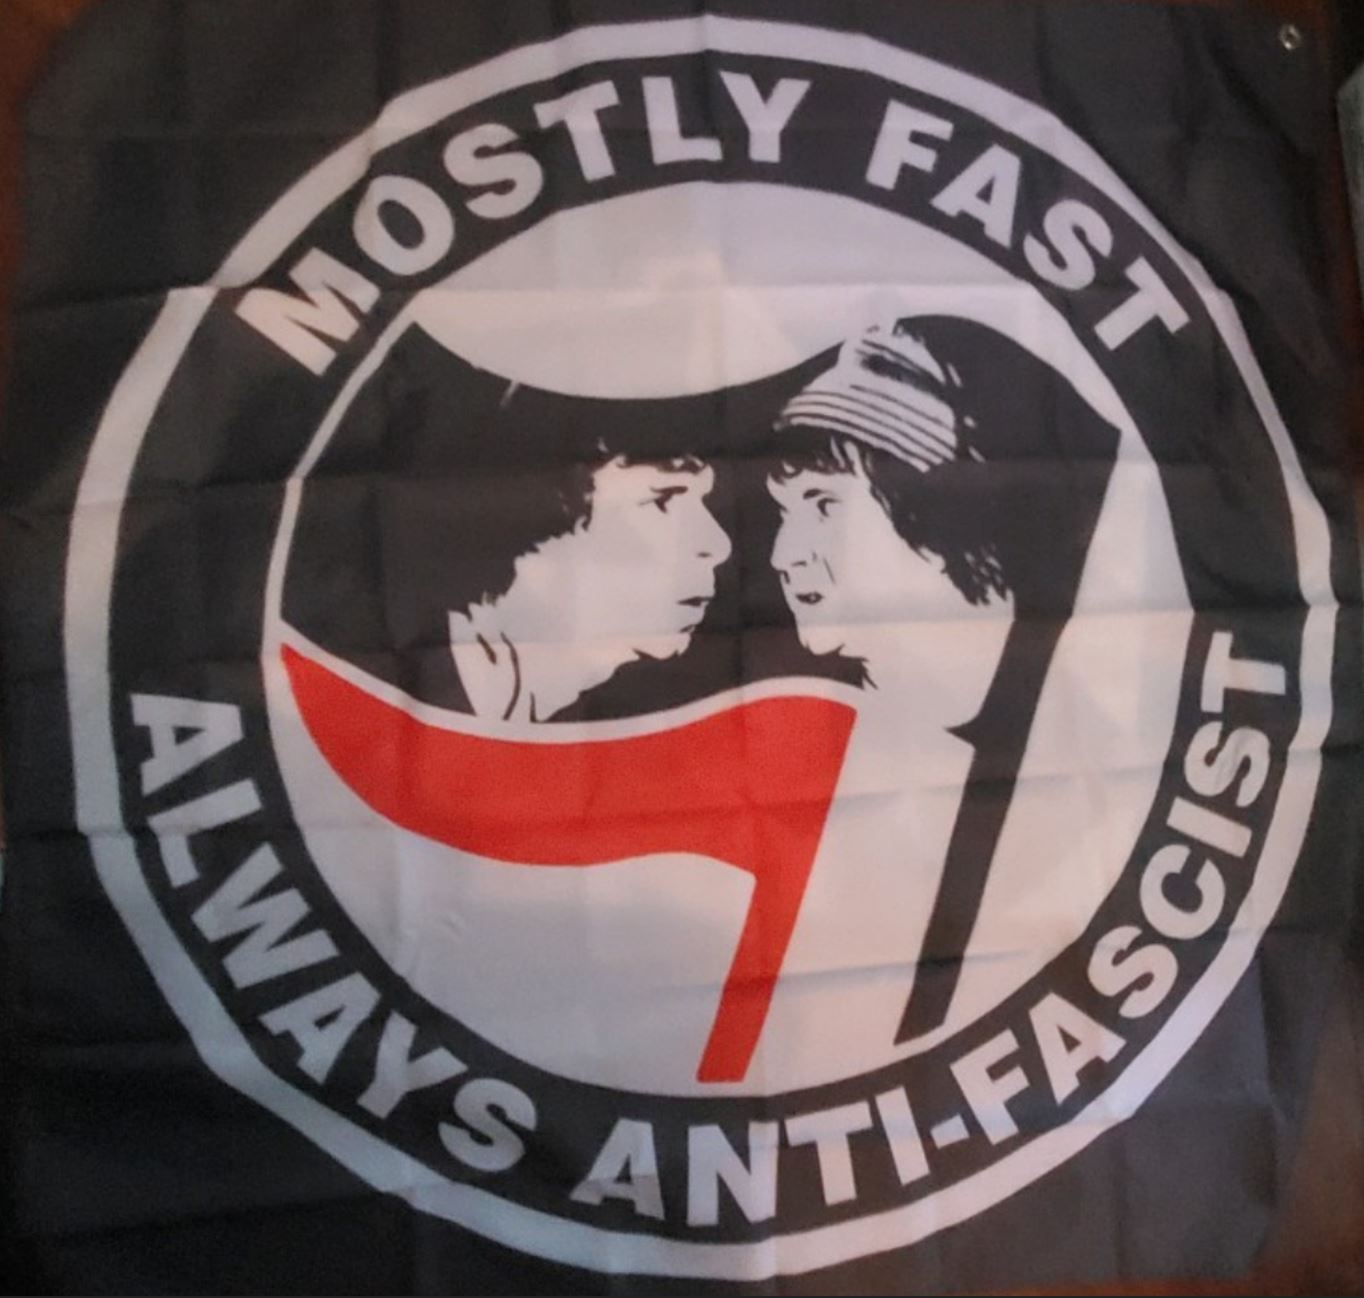 625 Thrashcore - Mostly Fast, Always Anti-Fascist 48"x48" Banner